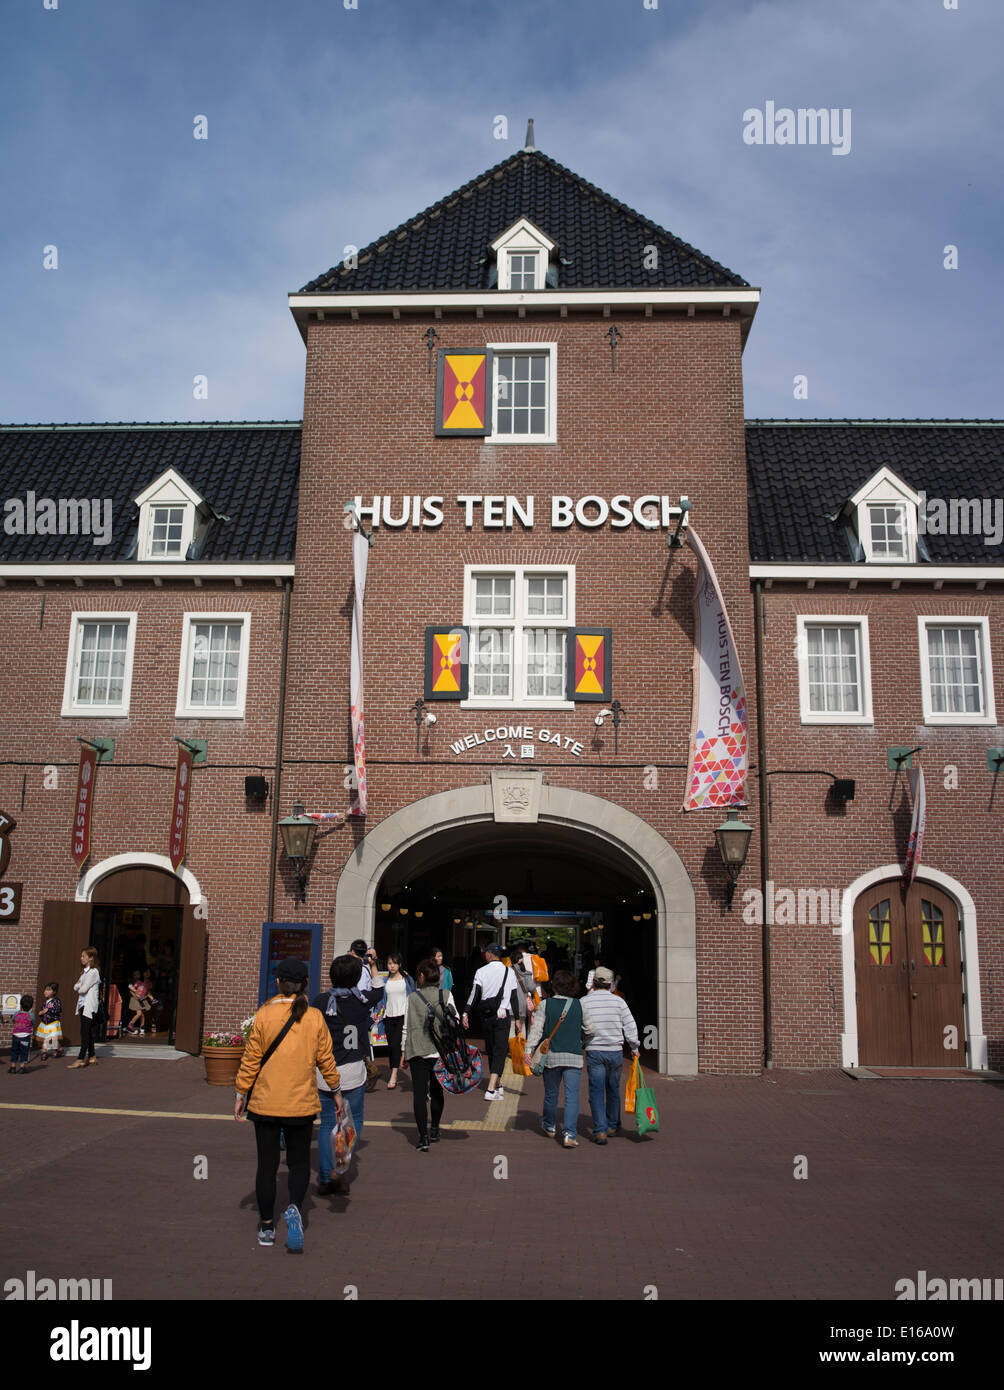 Huis ten Bosch, un parc à thème à Sasebo, Nagasaki, Japon. Pays-bas et recrée les bâtiments néerlandais. Banque D'Images